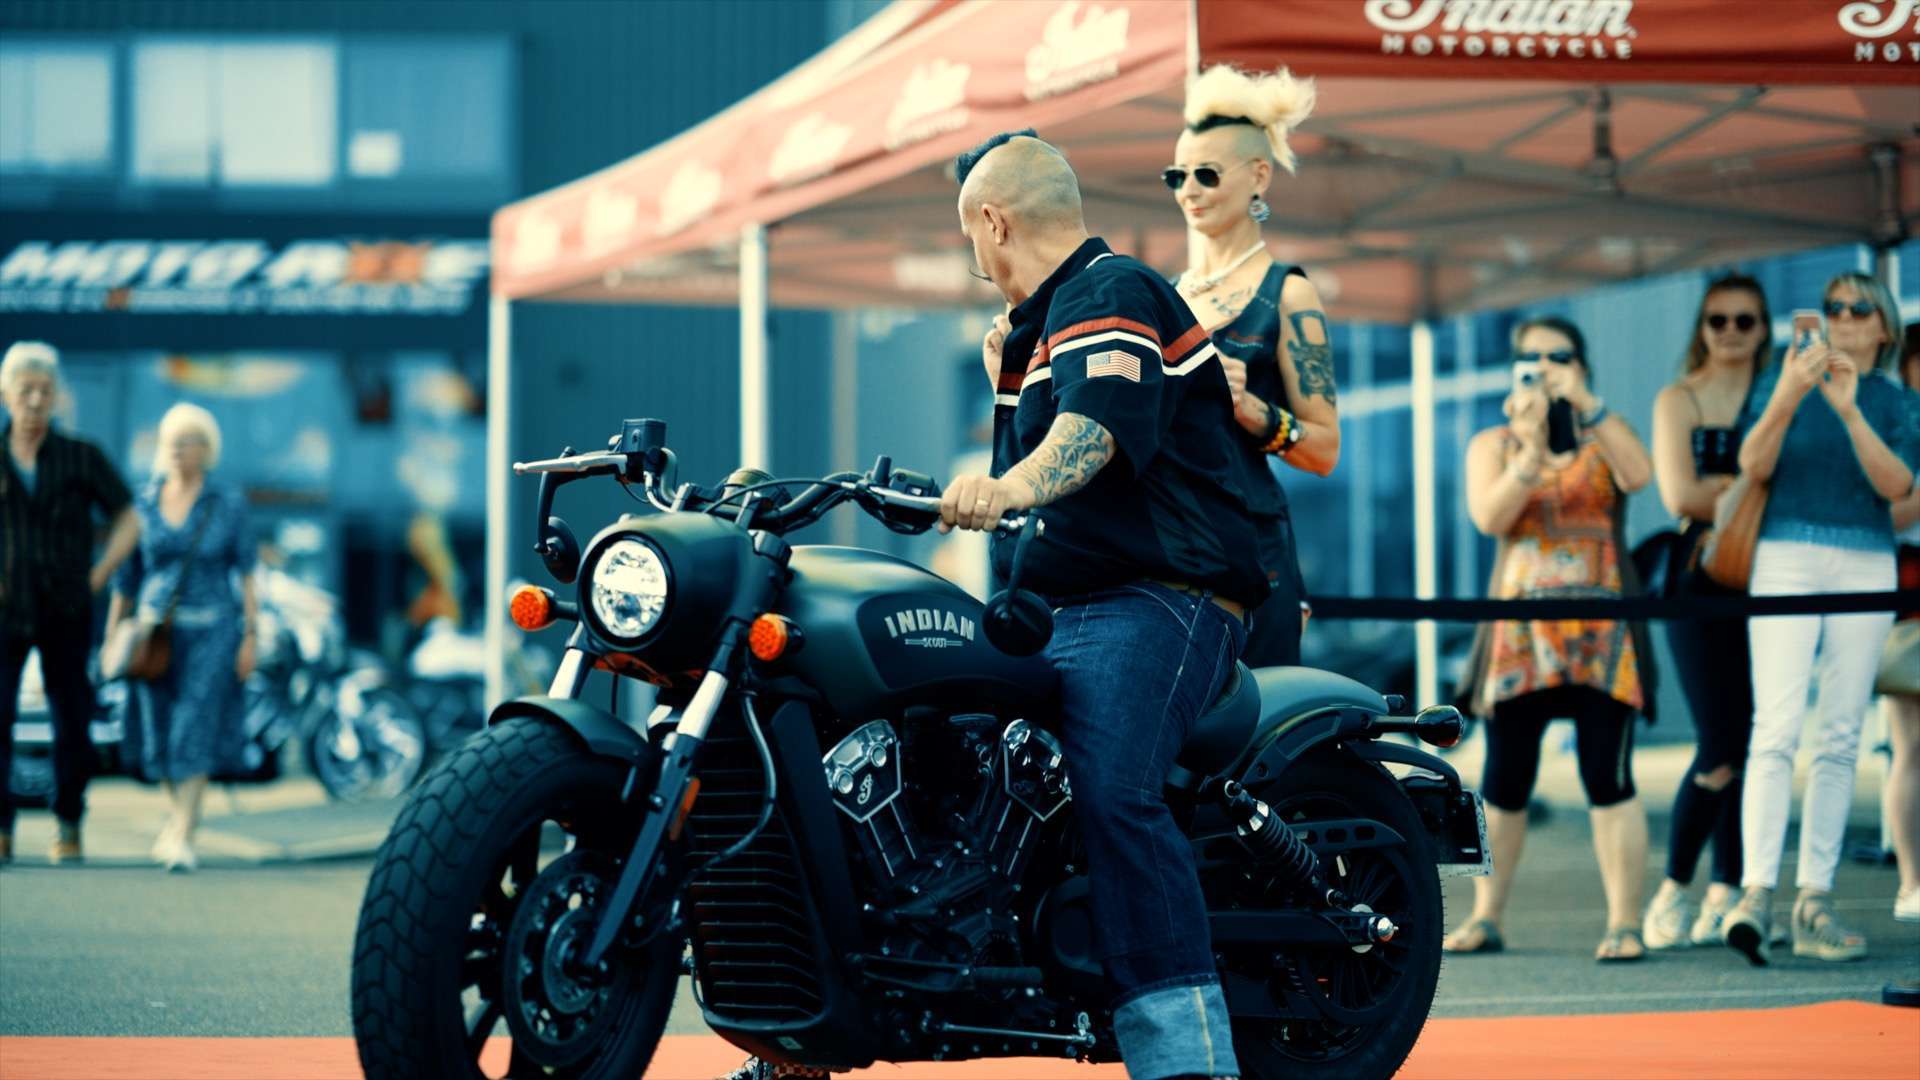 Indian Motorcycle, extrait de la vidéo de promotion du roadshow organisé par la concession Indian de Poitiers par le vidéaste Henri Guillon